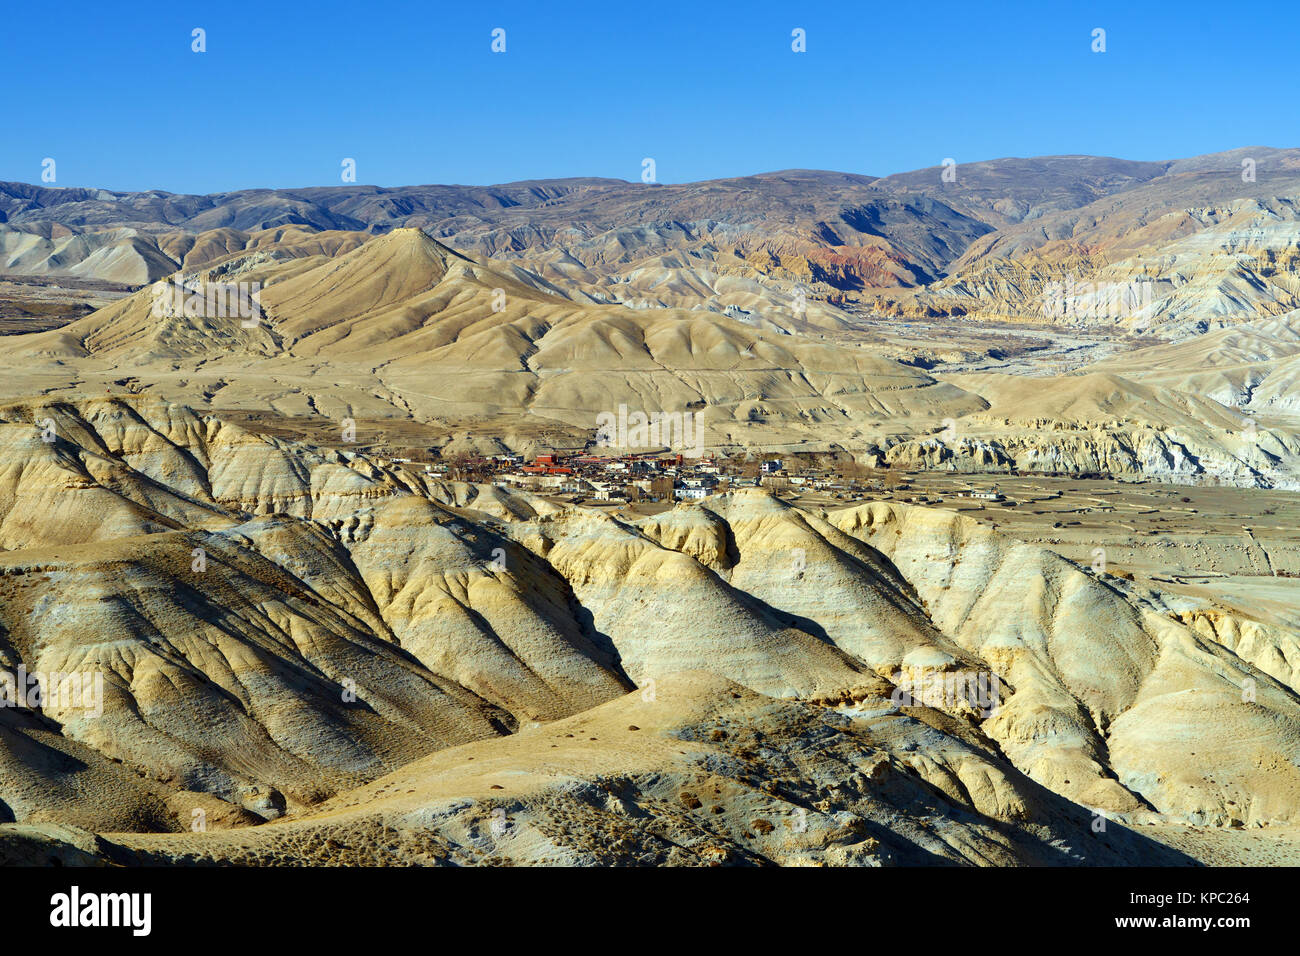 Lo Manthang, Hauptstadt der oberen Mustang, gesehen aus einer Entfernung inmitten einer kargen wüstenhaft Landschaft. Stockfoto